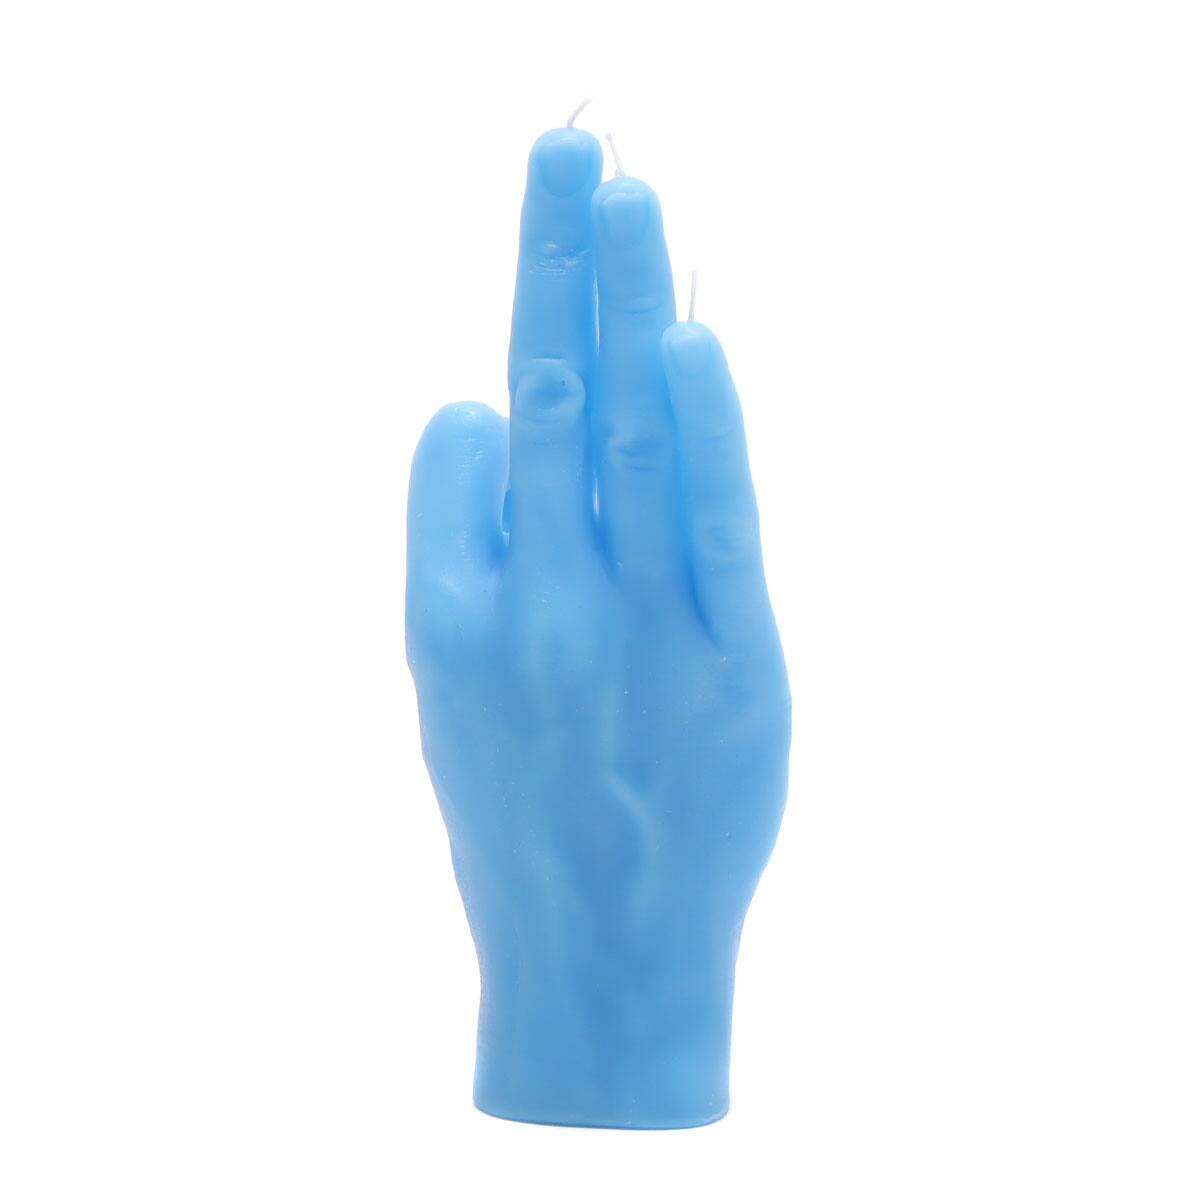 CANDLE HAND OK BLUE 21SU-I